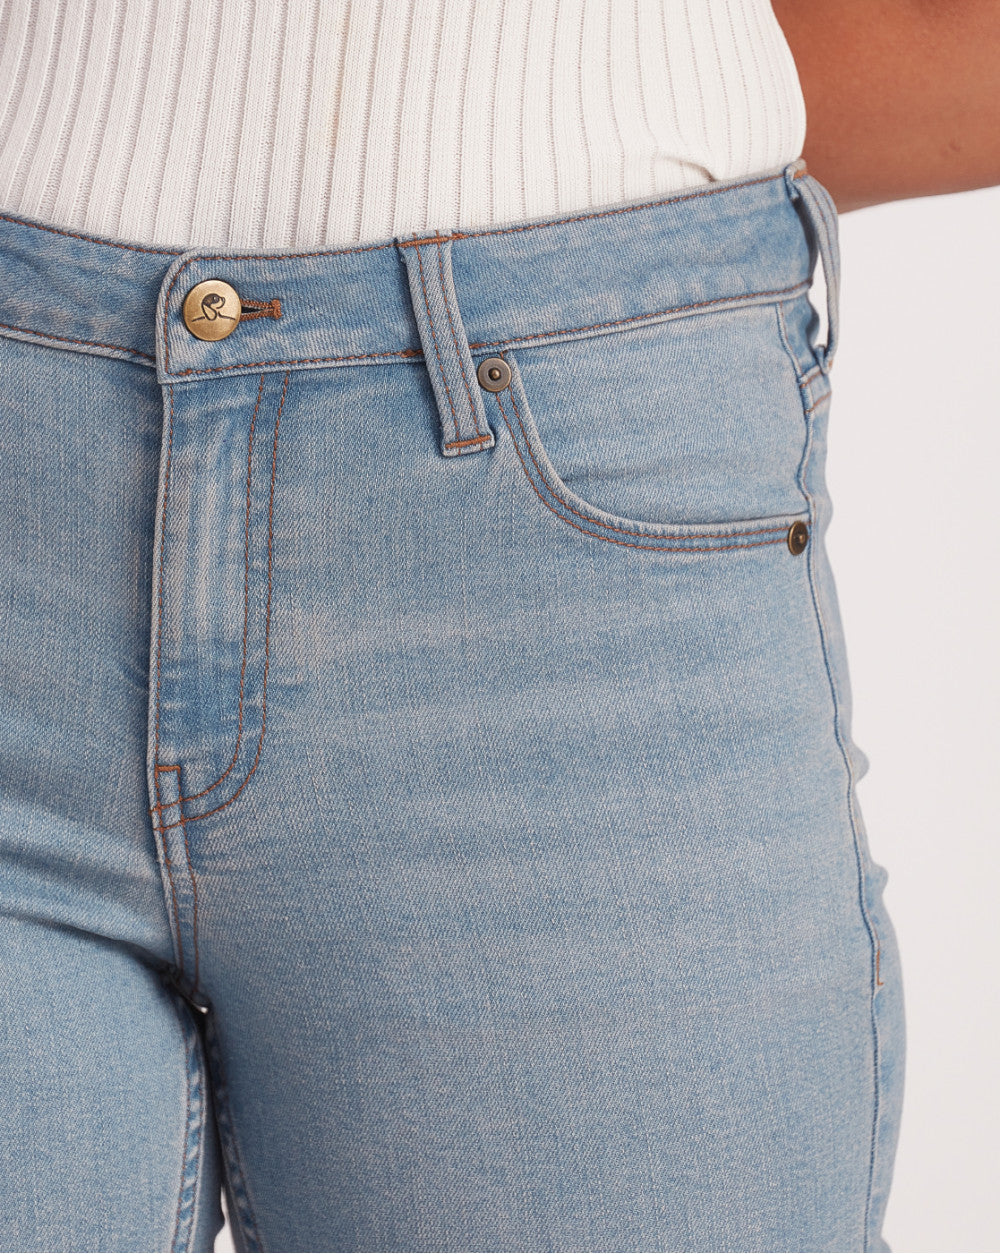 Mid Rise Five-Pocket Denim Shorts - Vapour Blue